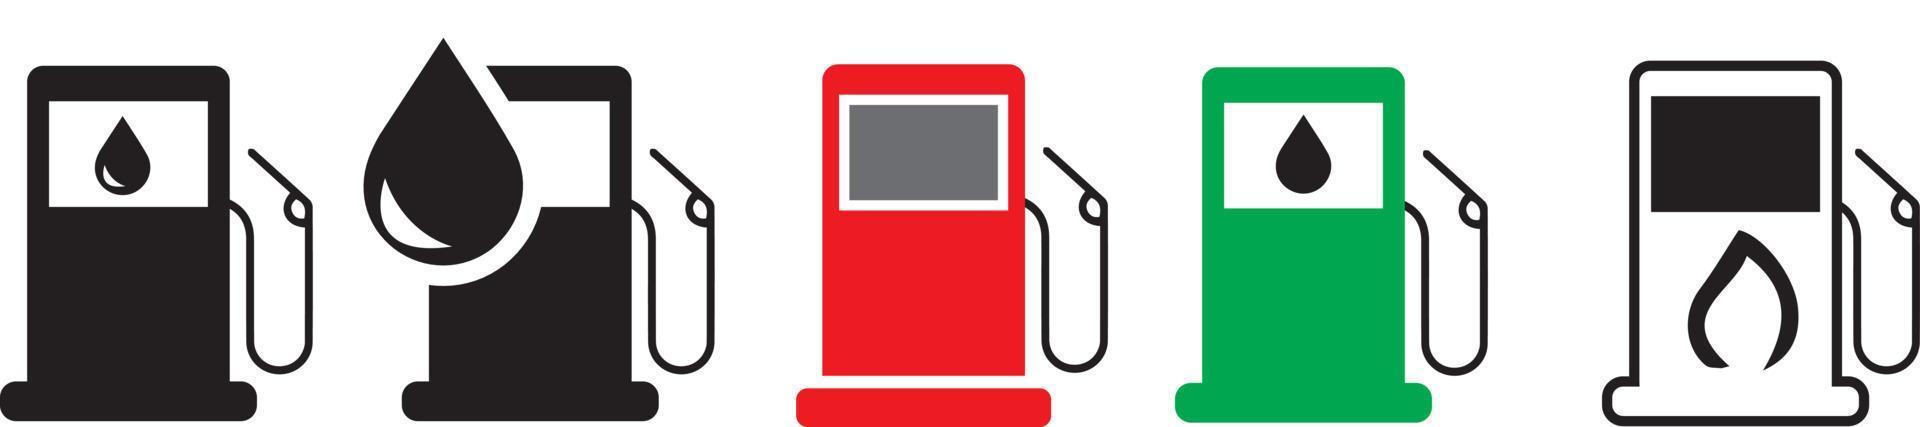 conjunto de iconos de combustible. iconos o signos de gasolineras. símbolo de icono de aceite de motor. recogida de transporte, combustible de gasolina. vector